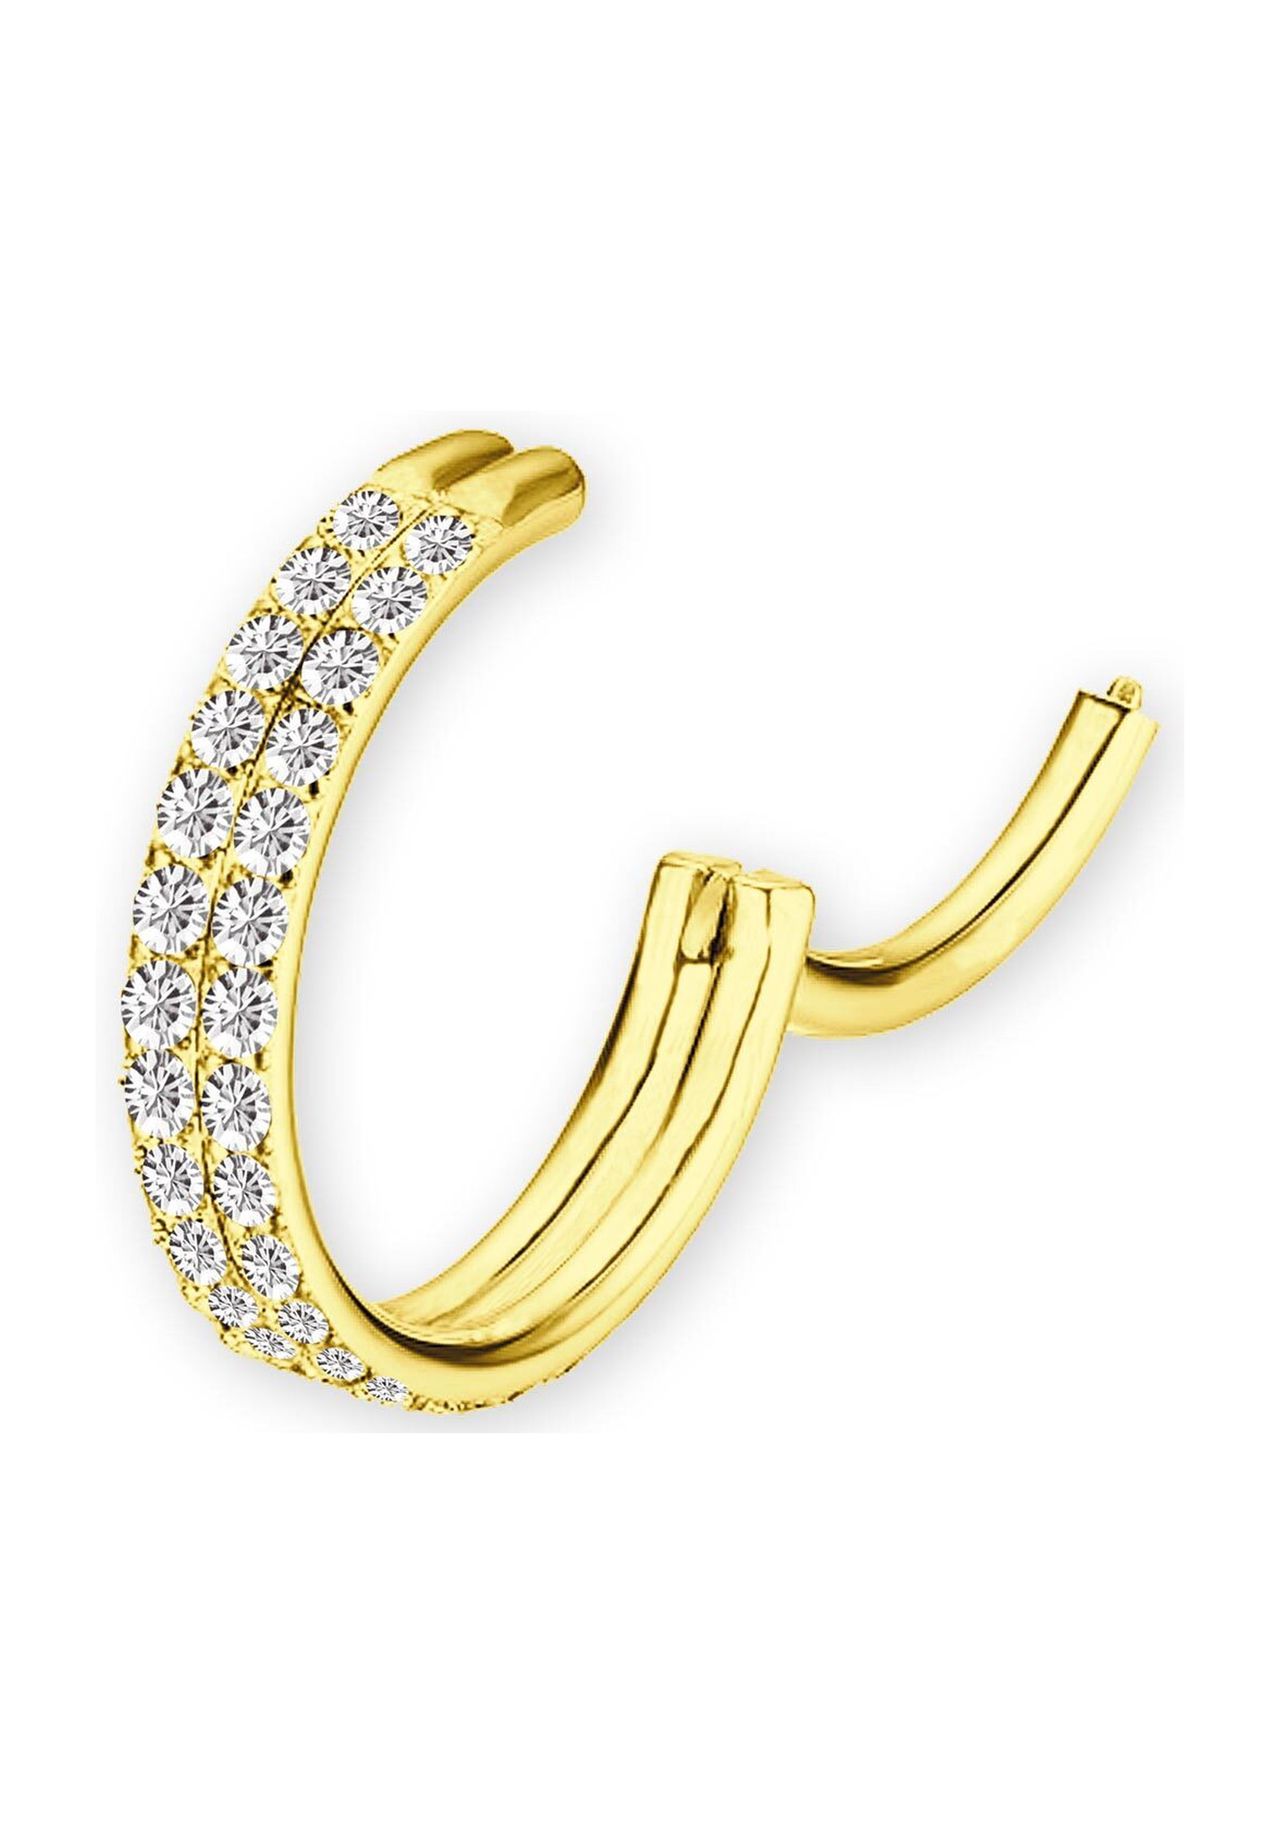 Adelia's Ohrpiercing Nasenpiercing Segment Ring Clicker Gold in 1,2 mm mit  2er Steinkranz | GALERIA